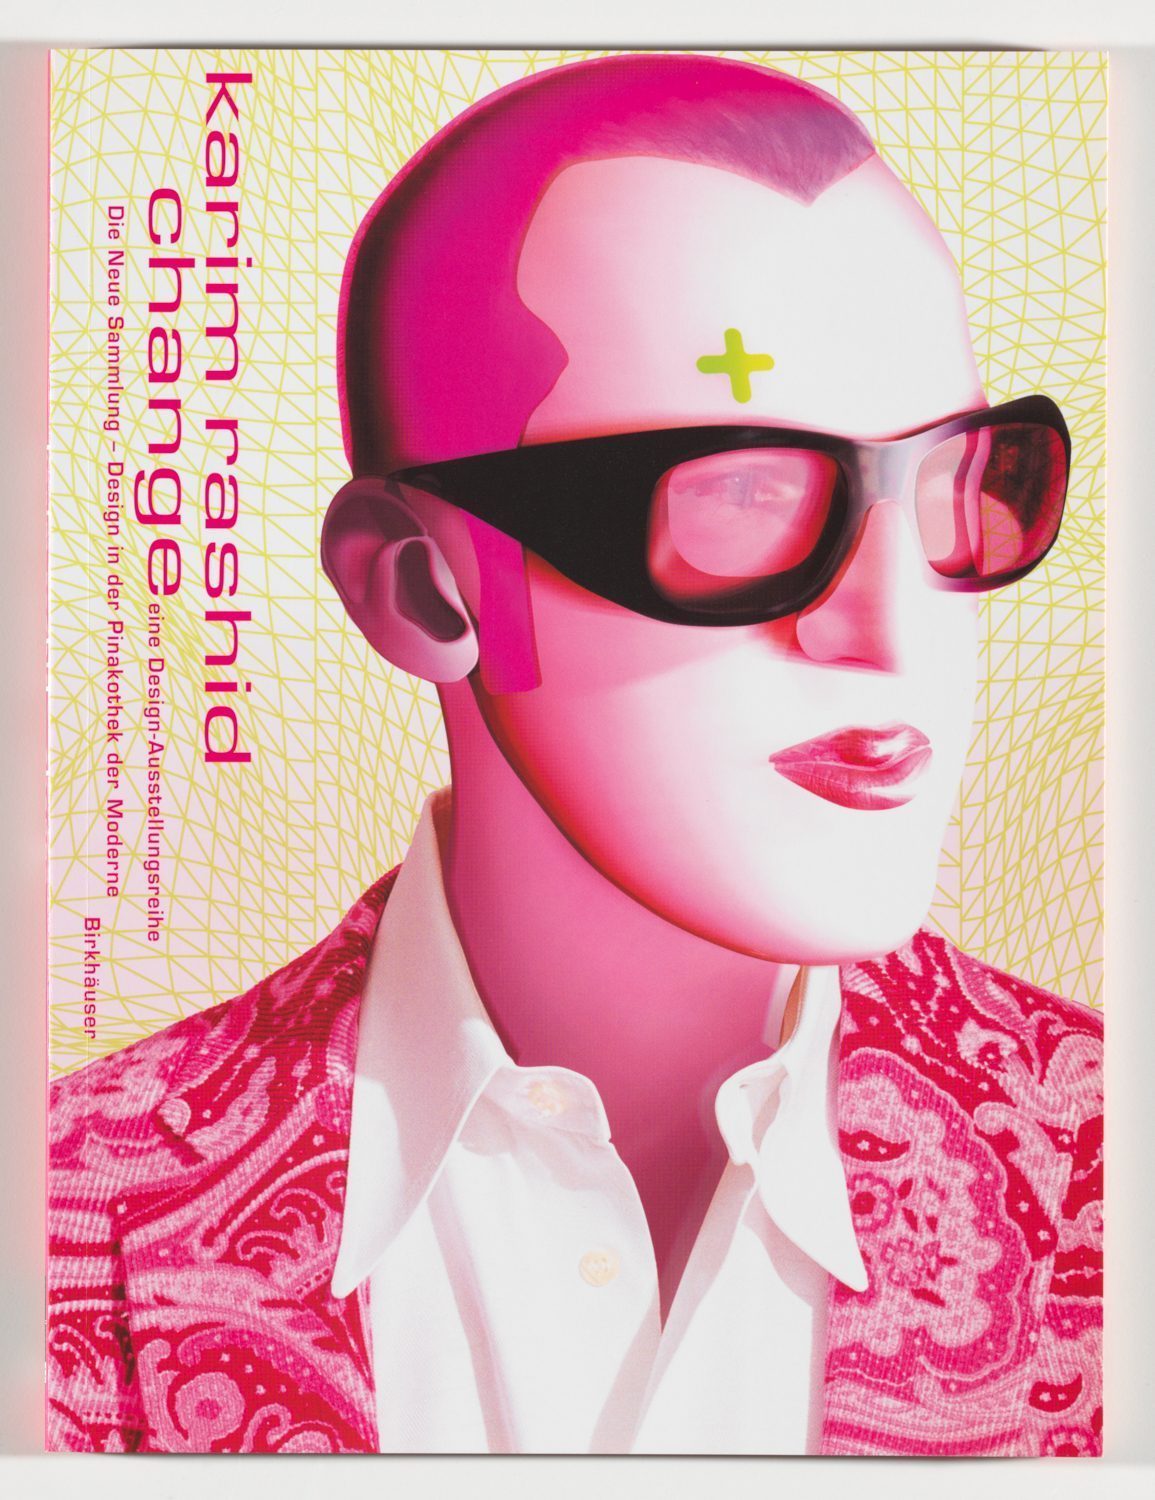 In Pop-art-Manier gemaltes dreiviertelansichtiges Schulterportrait von Karim Rashid, der eine Sonnenbrille trägt. Über der rechten Braue ein graues Kreuz. Links von oben nach unten Beschriftung: Karim Rashid change. Dominate Farbe ist Pink.